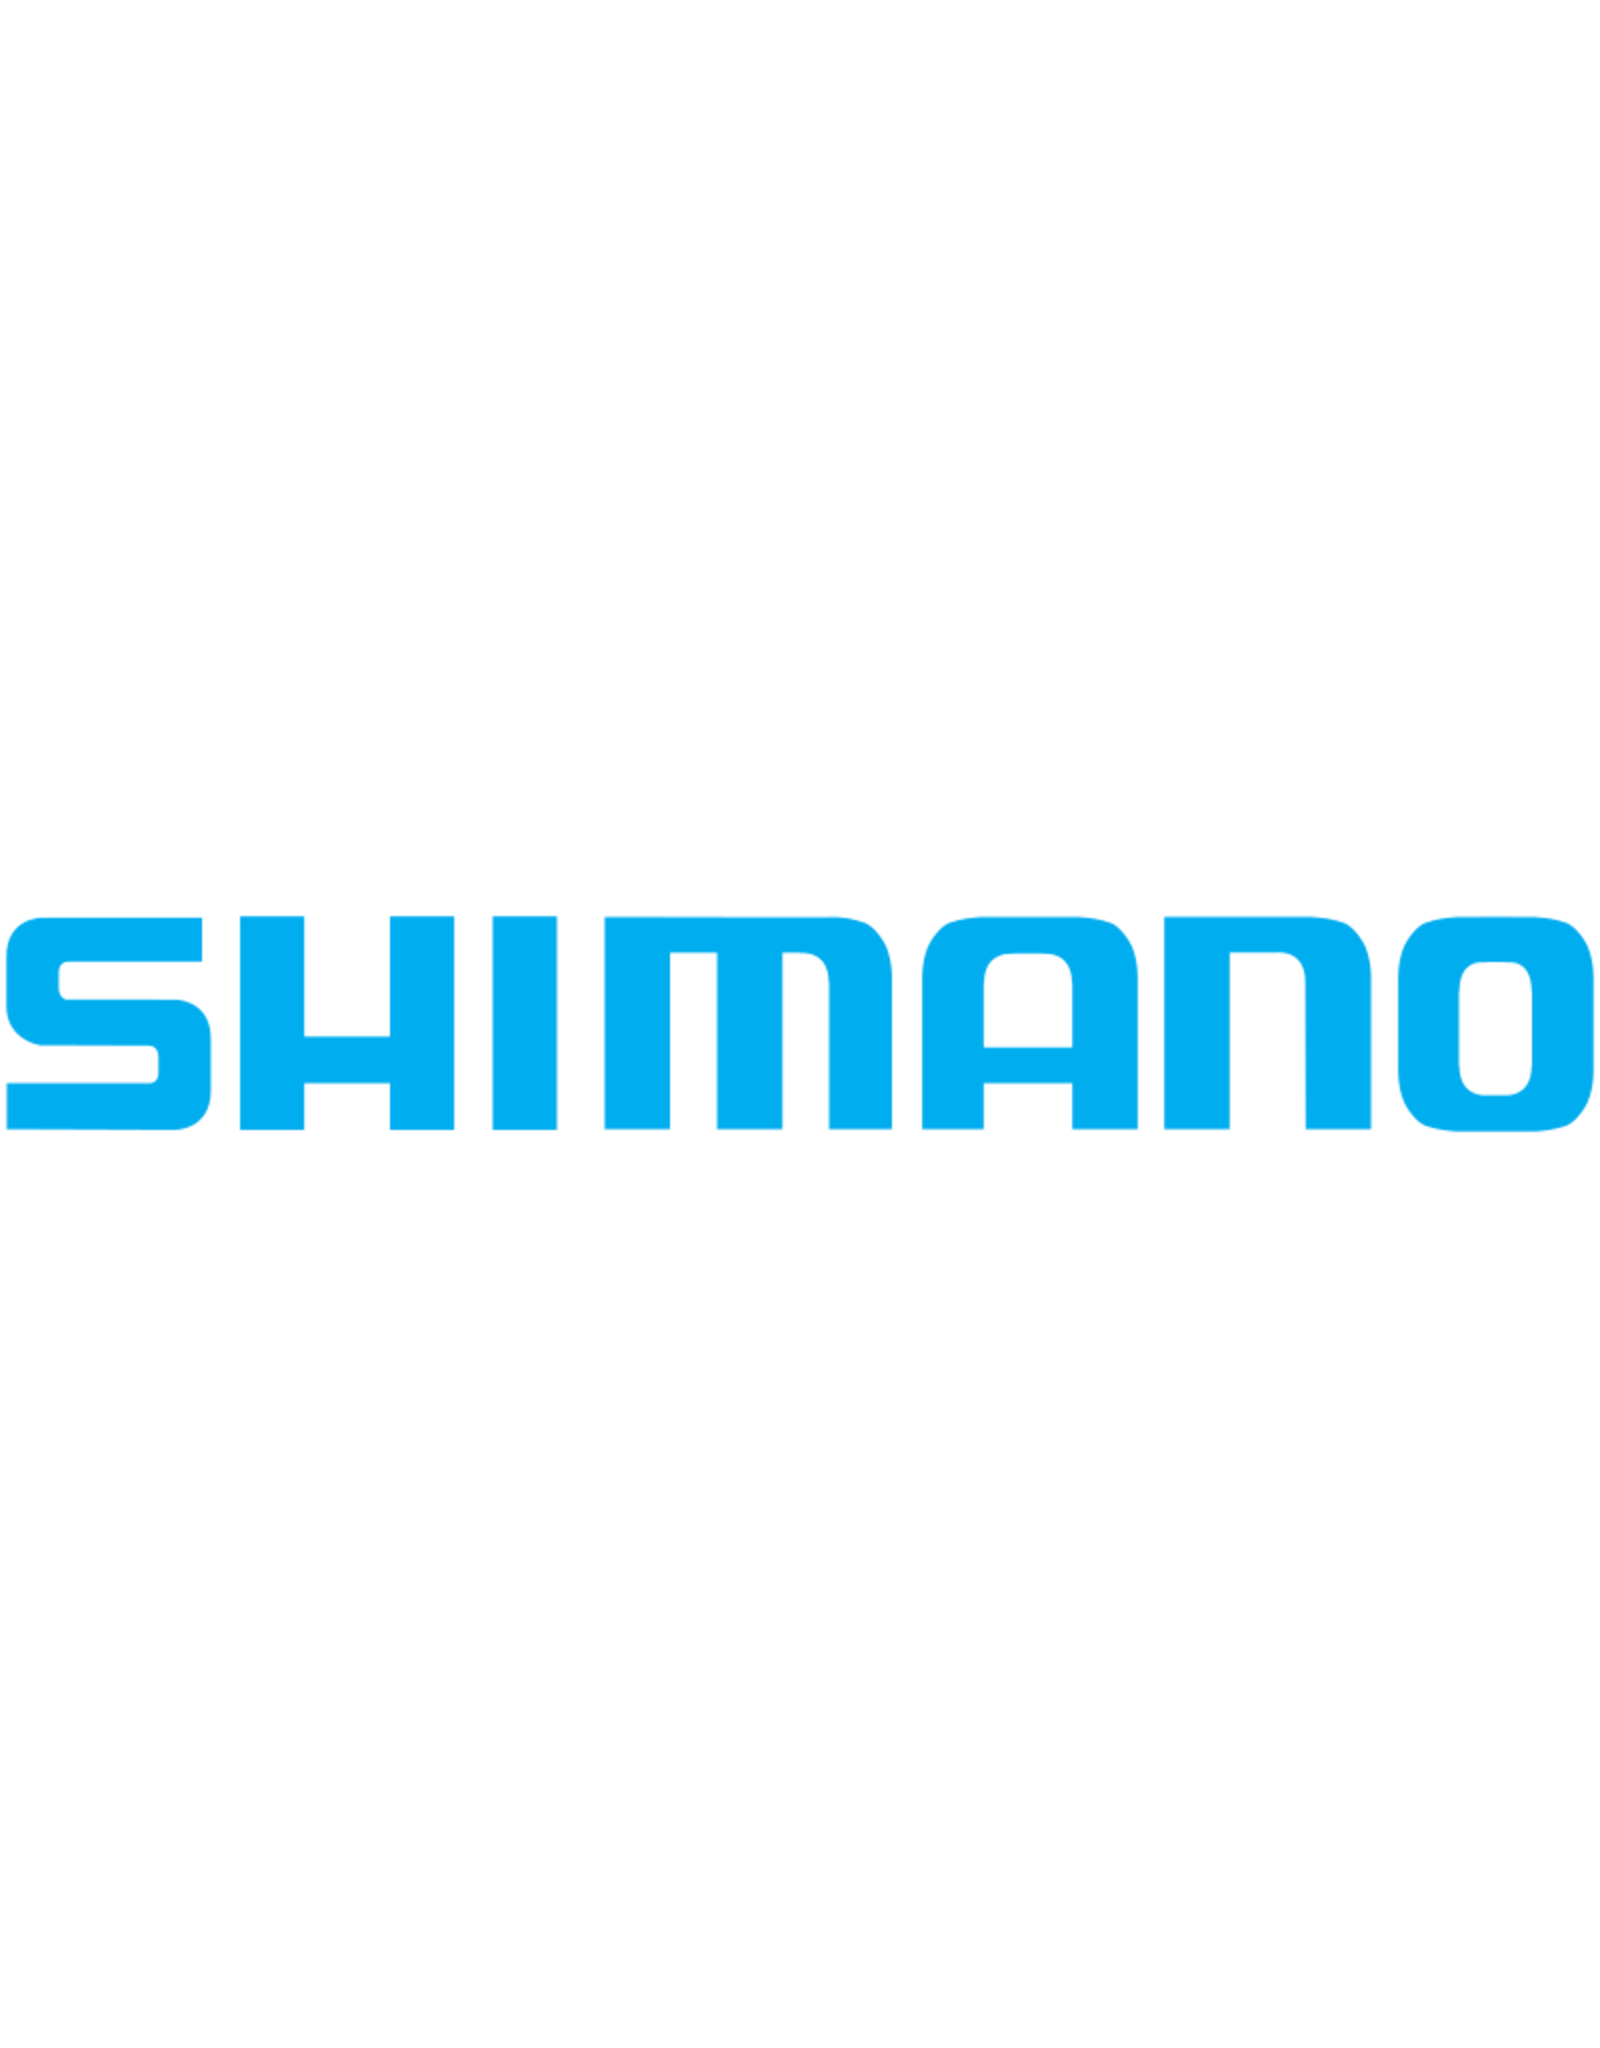 Shimano RD17707  WORM BUSHING